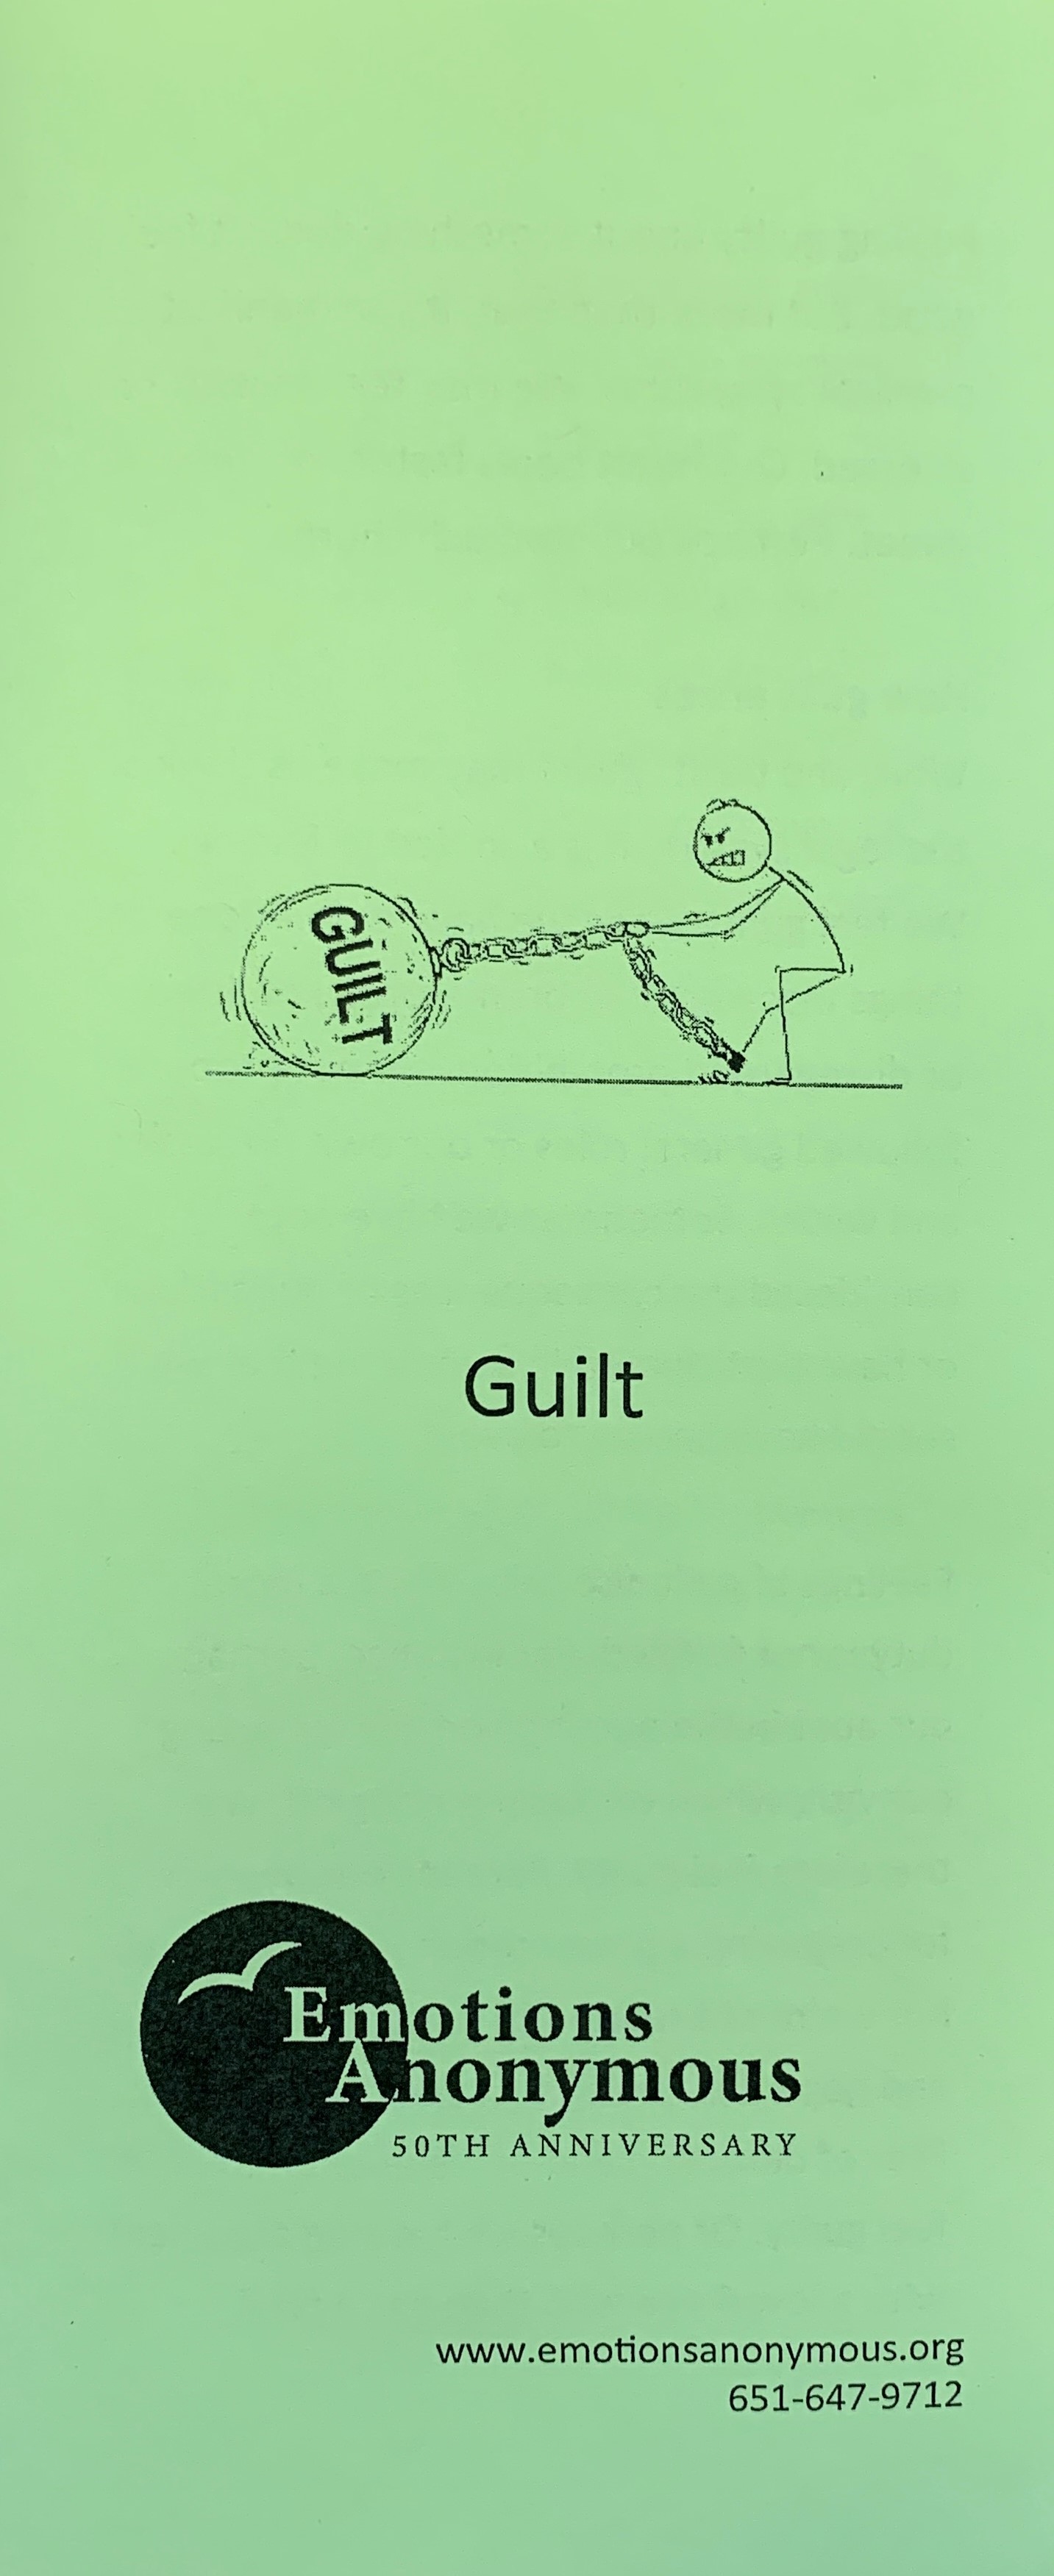 Item #94 — "Guilt" Pamphlet (New in 2021)